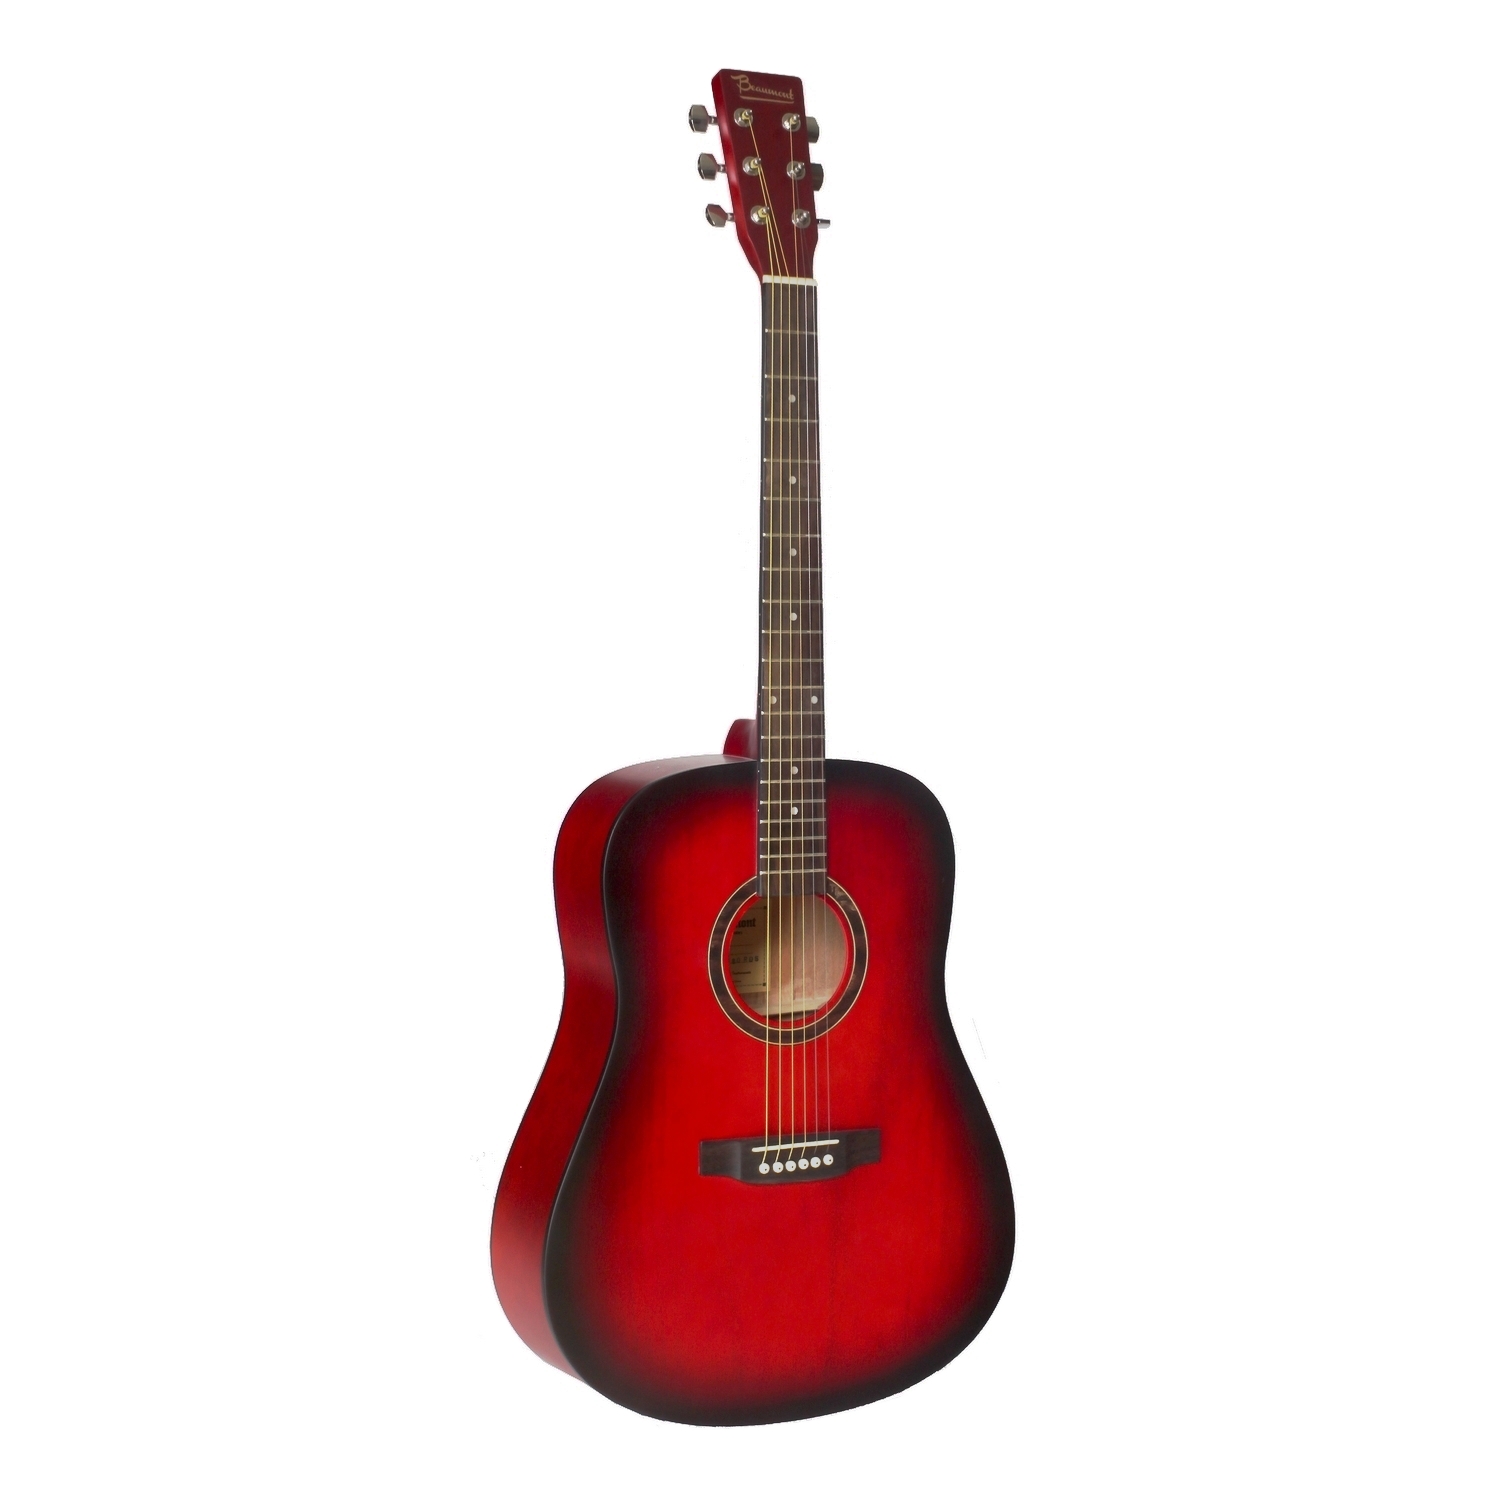 BEAUMONT DG80/RDS - акустическая гитара, дредноут, корпус липа, цвет красный санбёрст, матовый